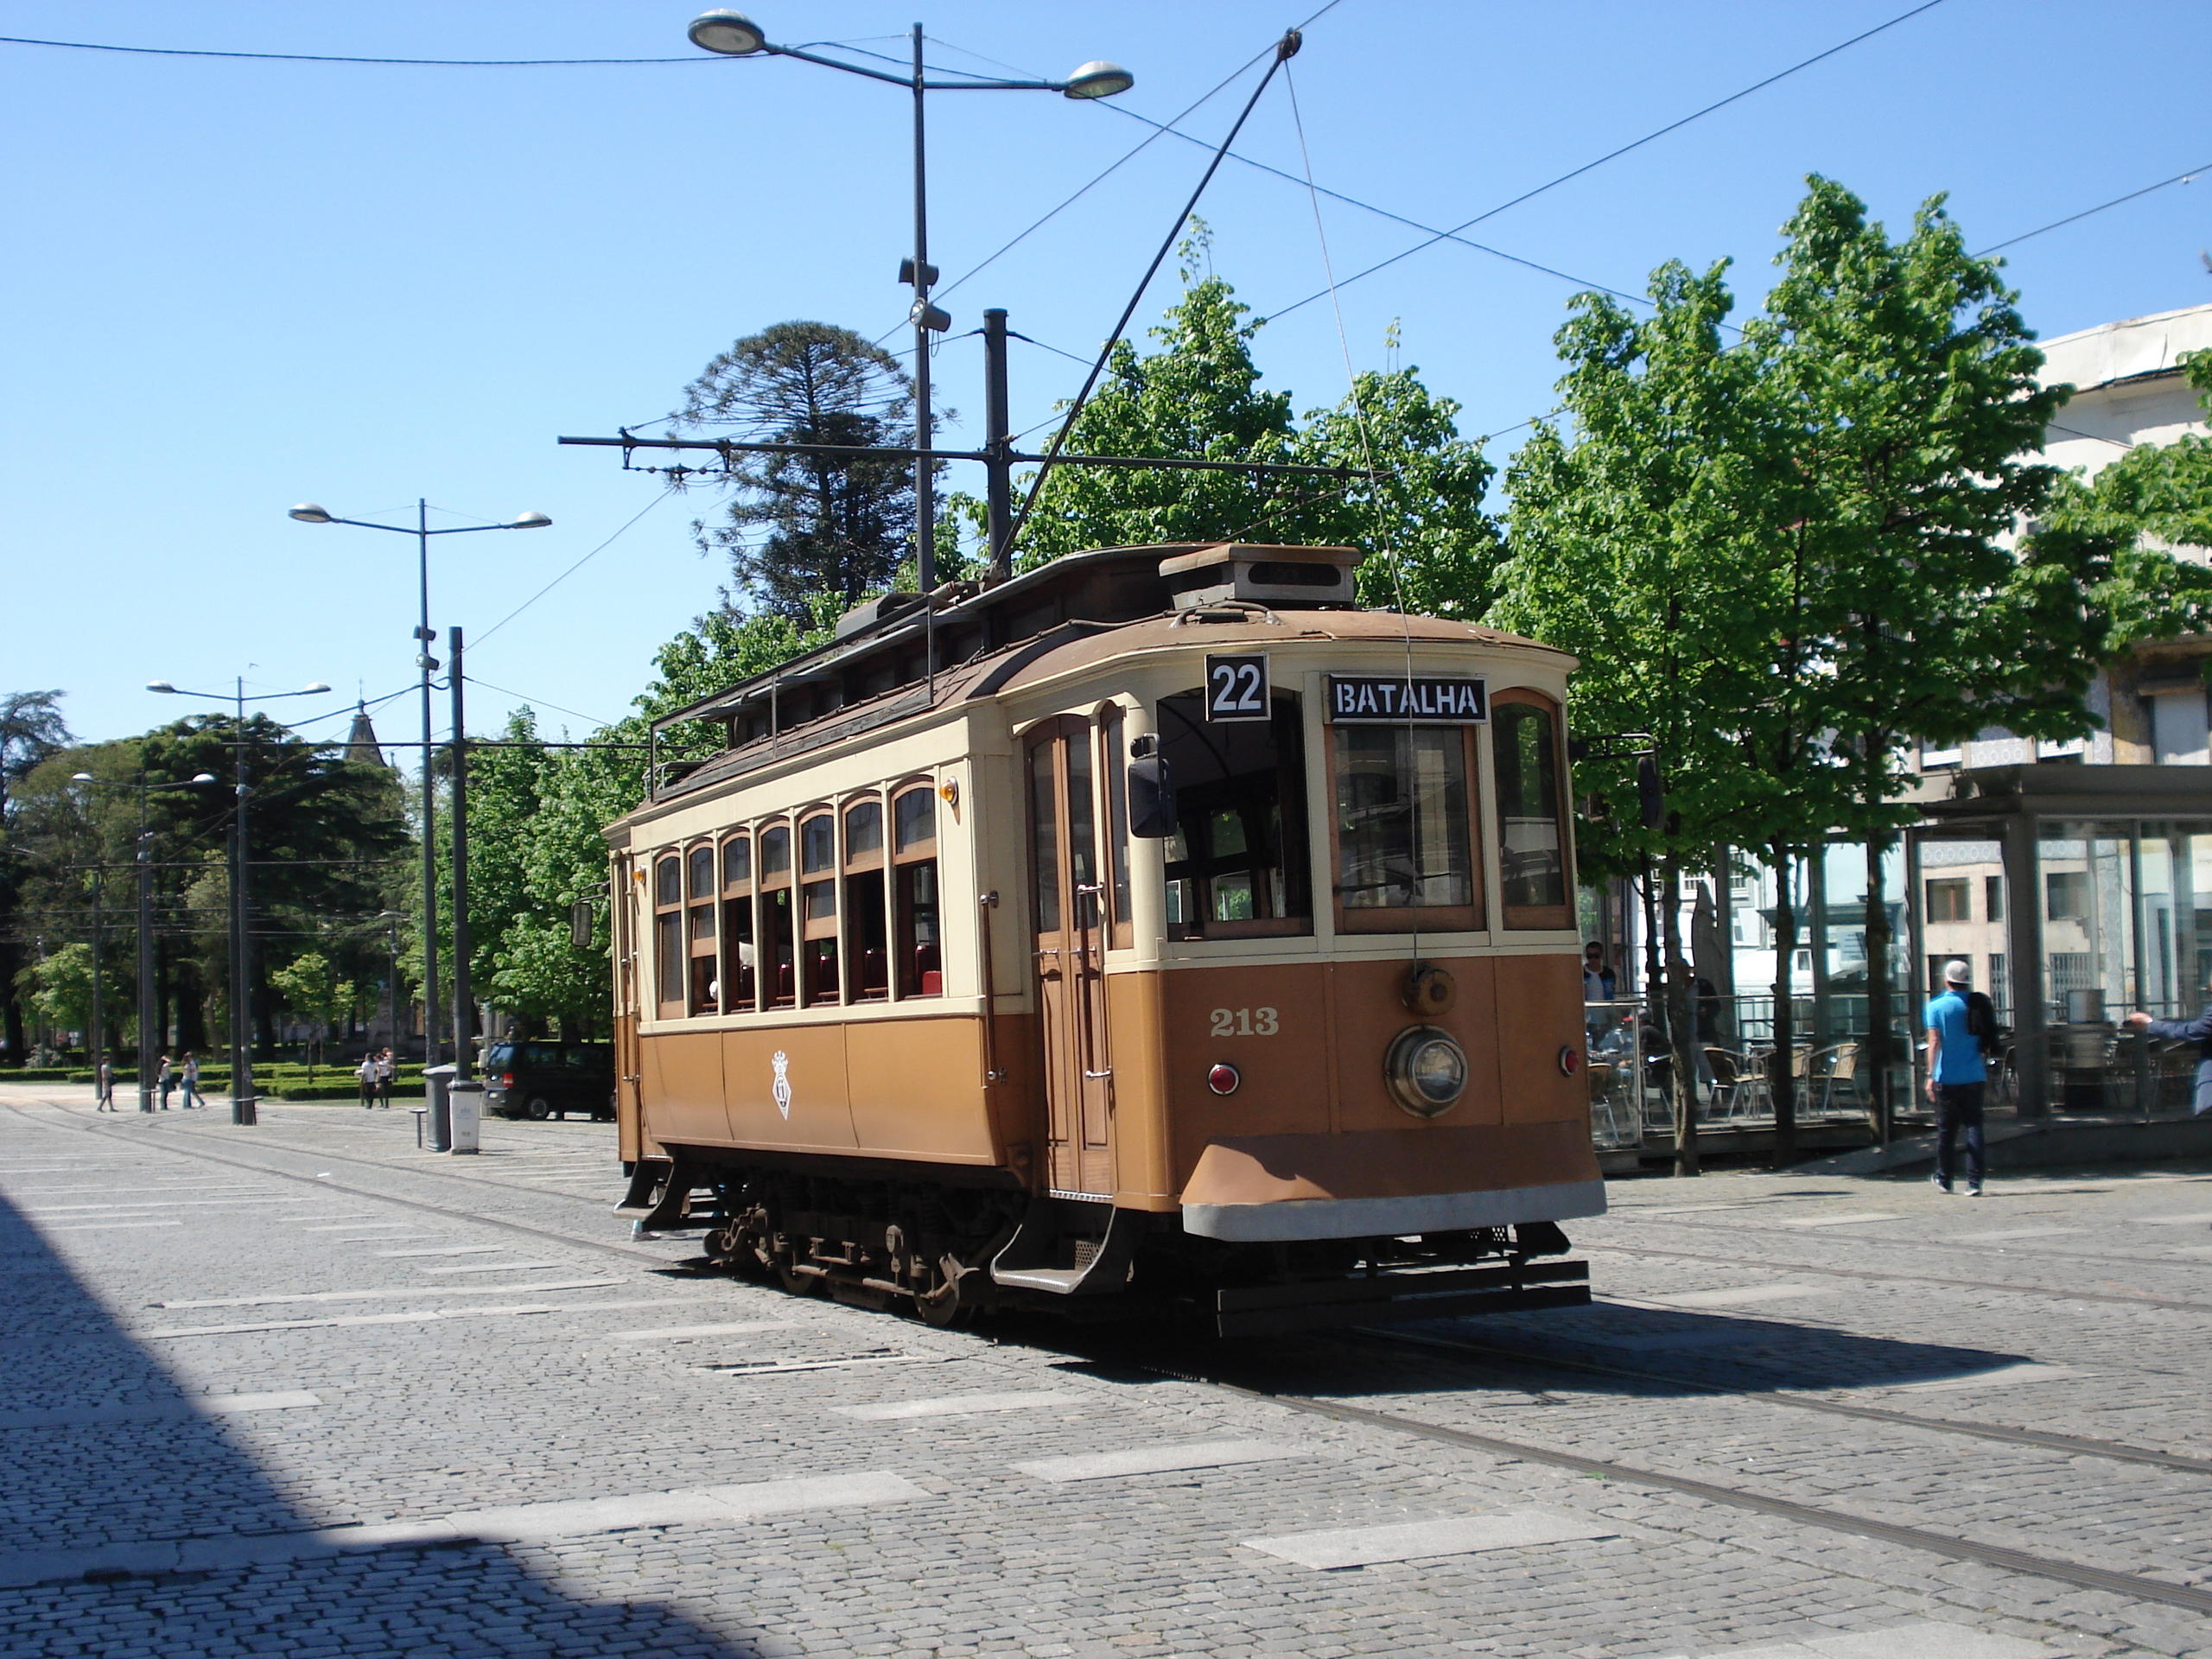 1-Day Porto Walking Tour